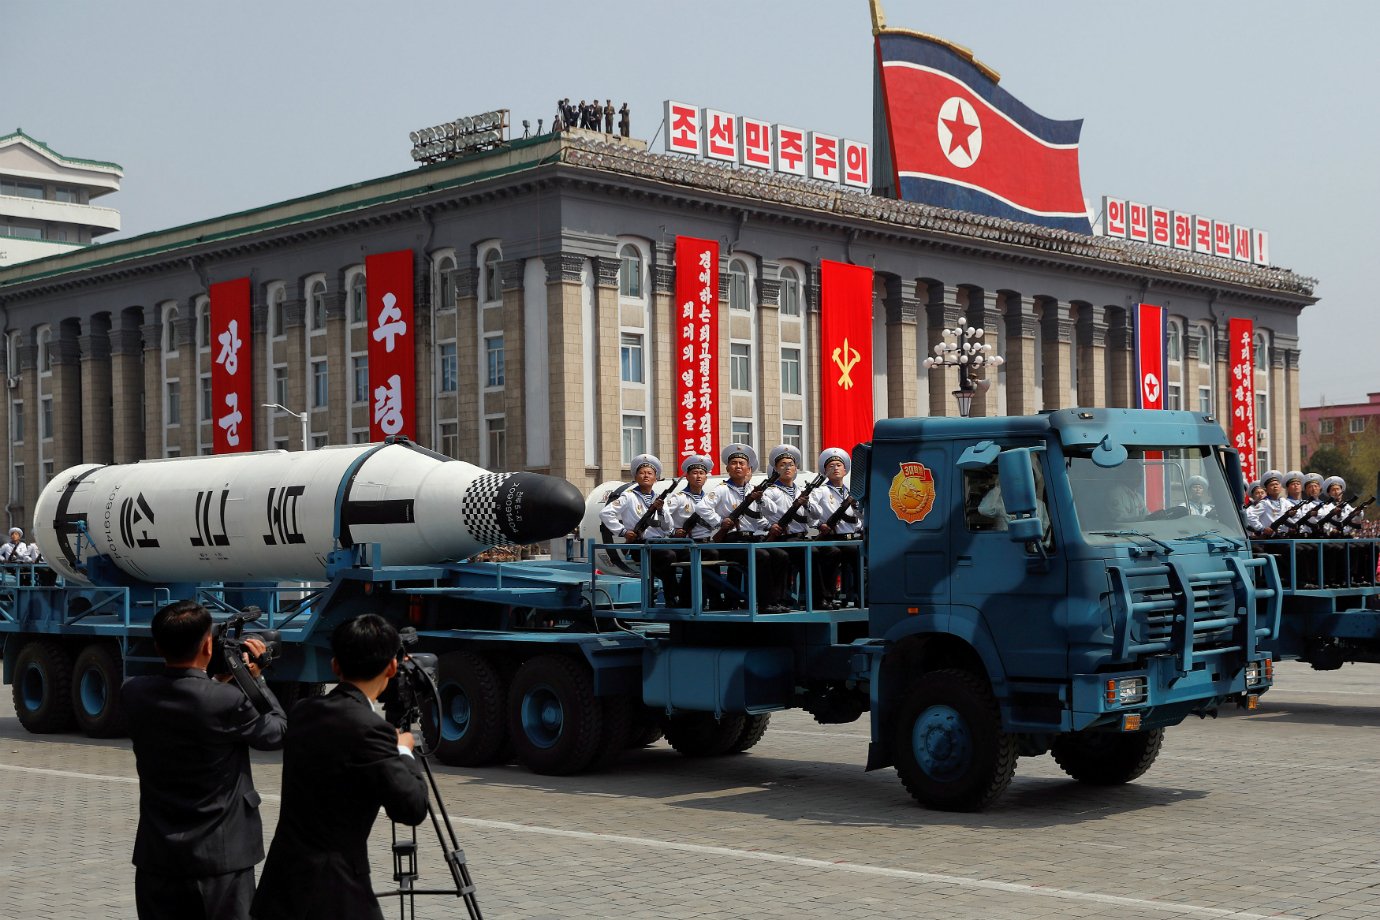  Desfile militar na Coreia do Norte (Fonte: Damir Sagolj/Reuters - Reprodução)